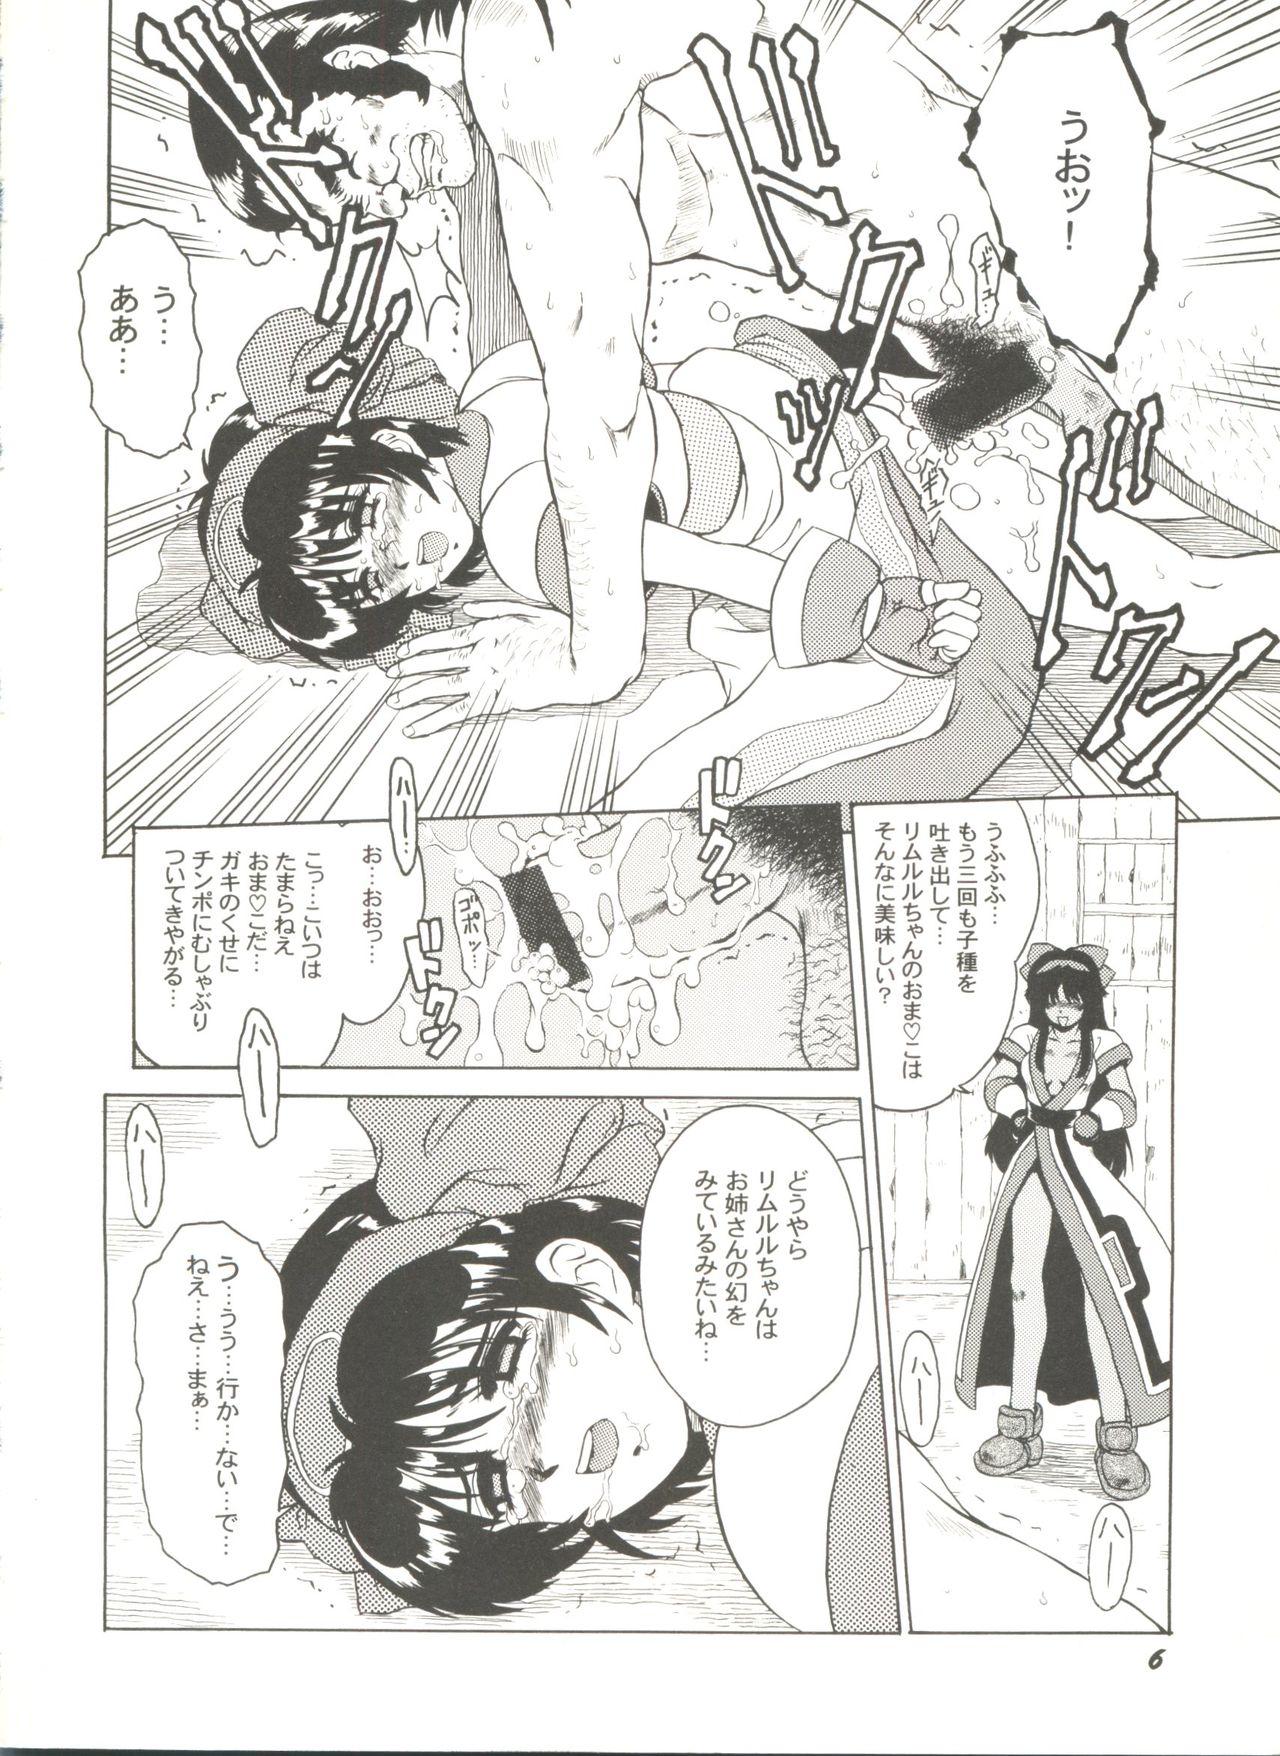 Sex Party Doujin Anthology Bishoujo Gumi 8 - Samurai spirits Sakura taisen Battle athletes Girls Fucking - Page 10